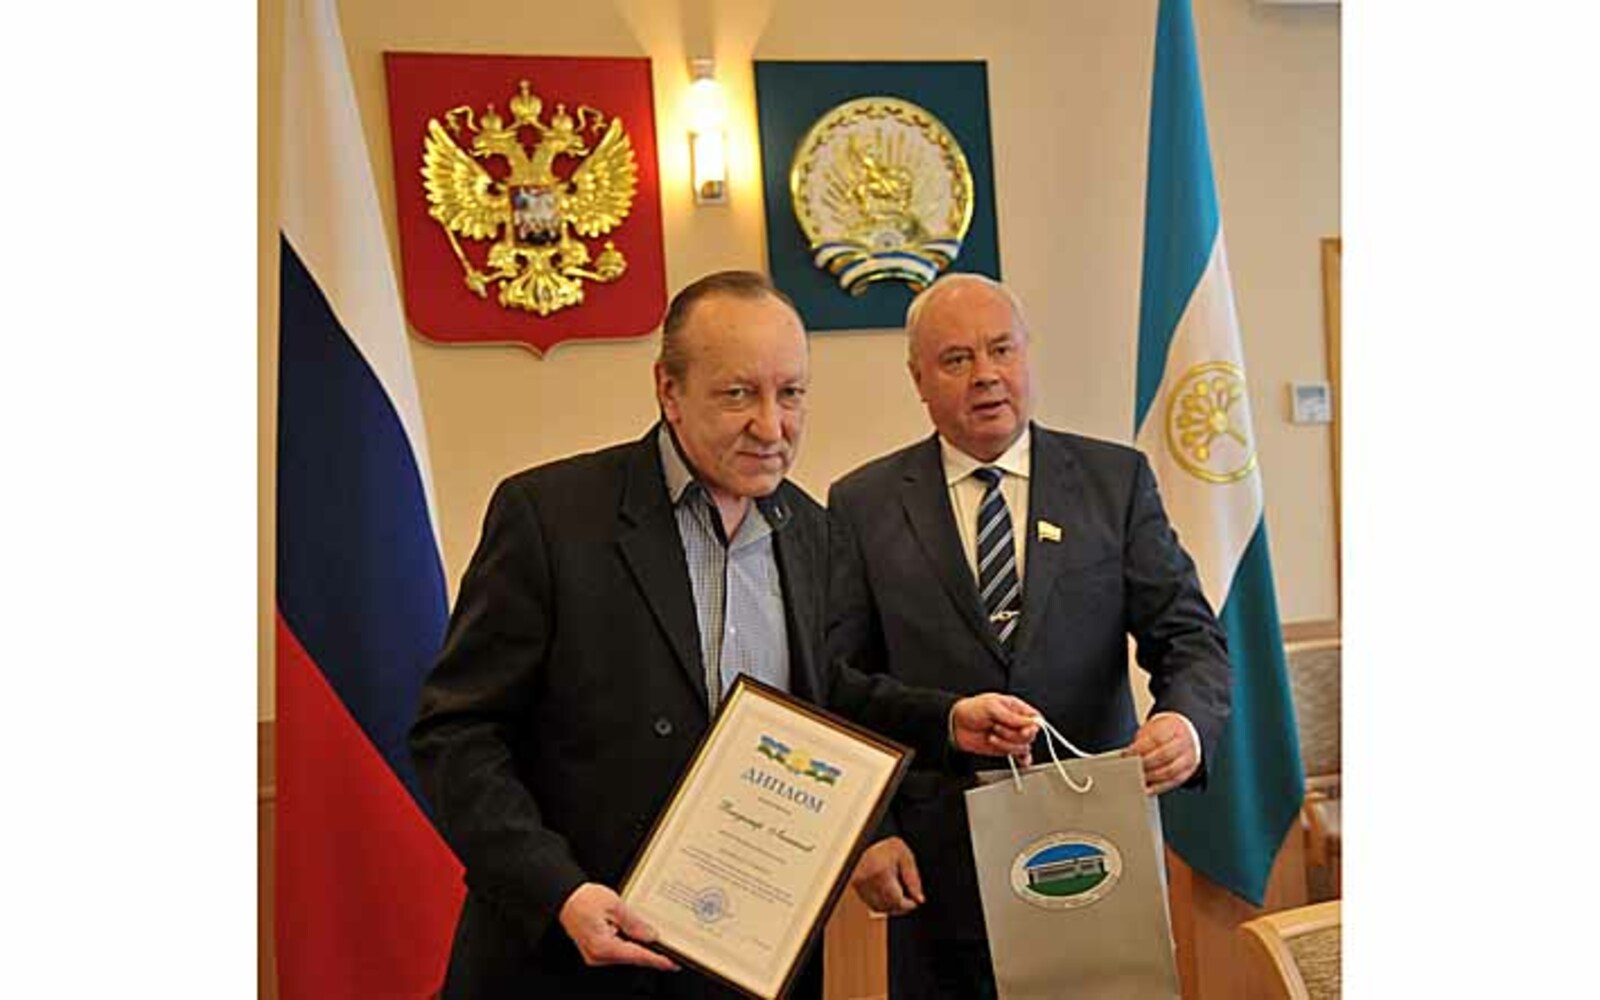 Константин Толкачев (справа) поздравил с победой конкурса СМИ и журналиста нашей газеты Владимира Леонтьева.